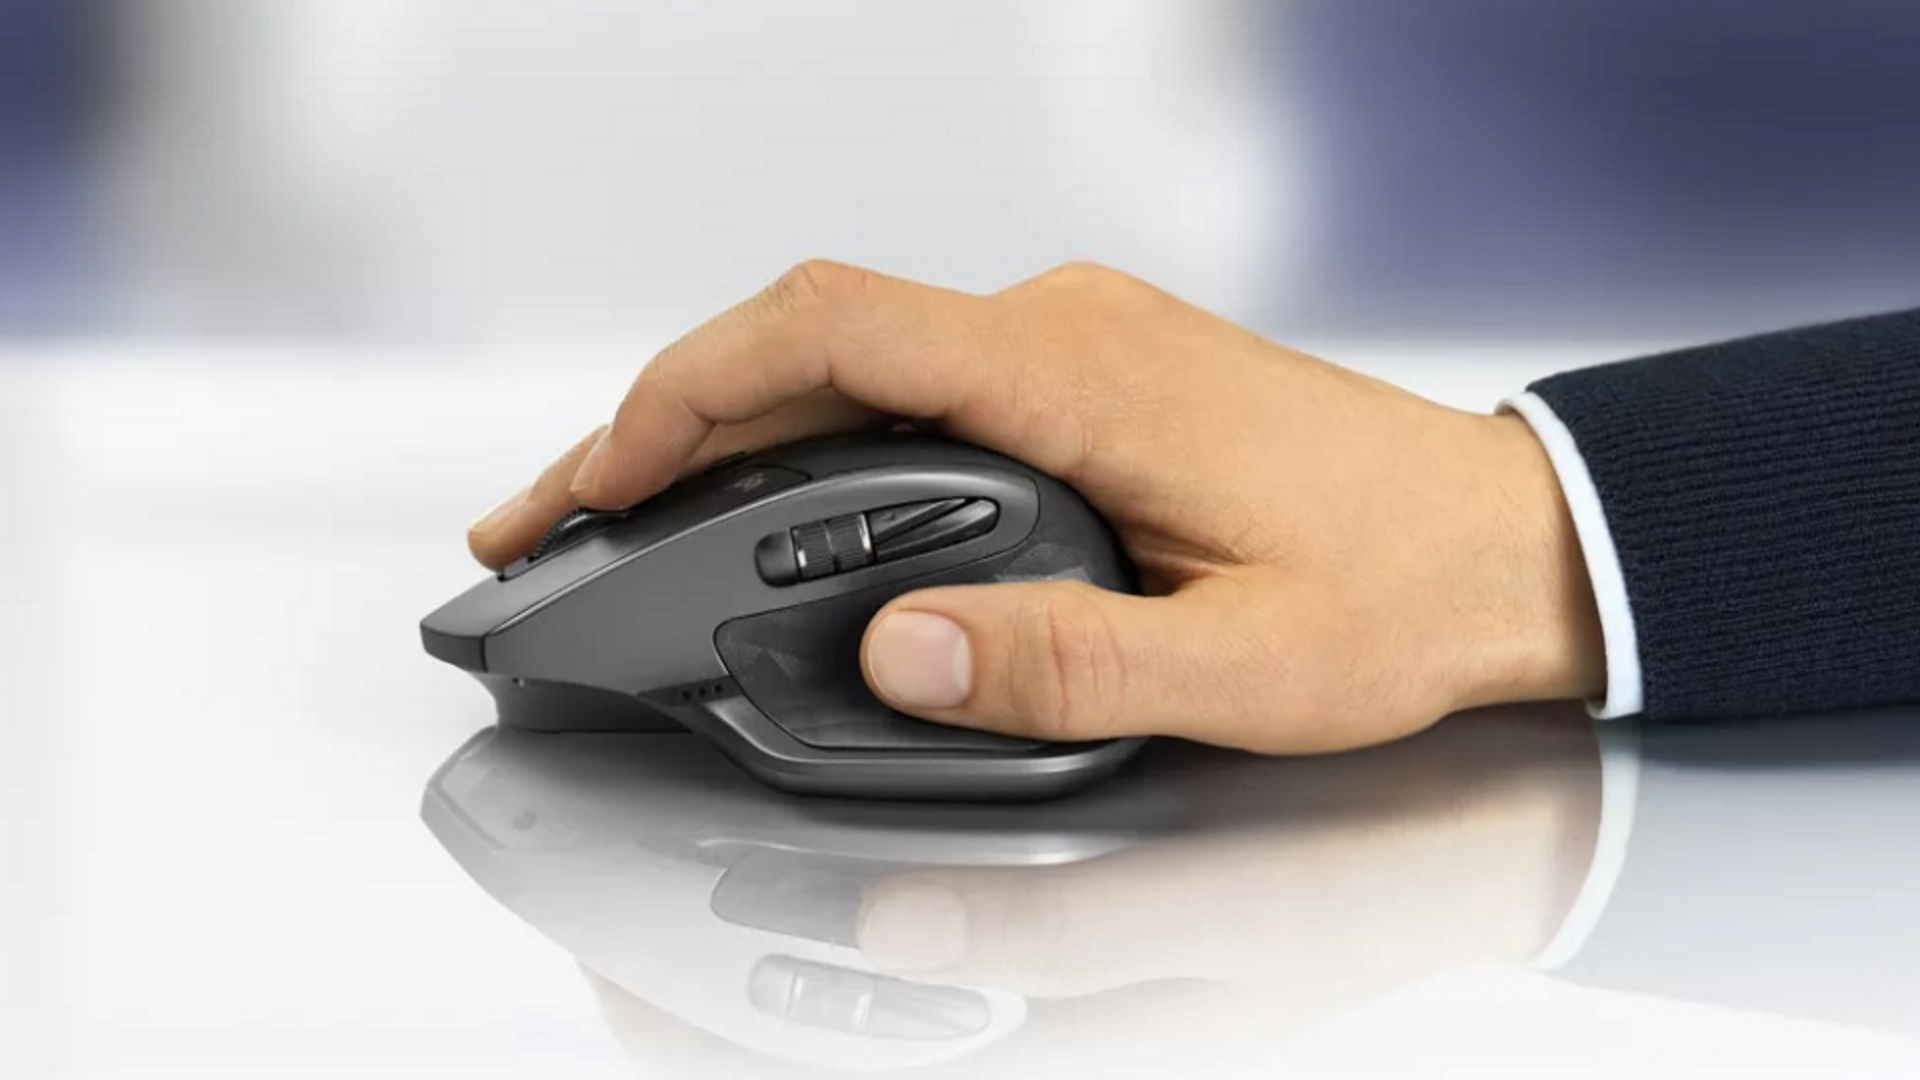 La souris Logitech MX Master permet de jongler entre plusieurs ordinateurs  - Numerama